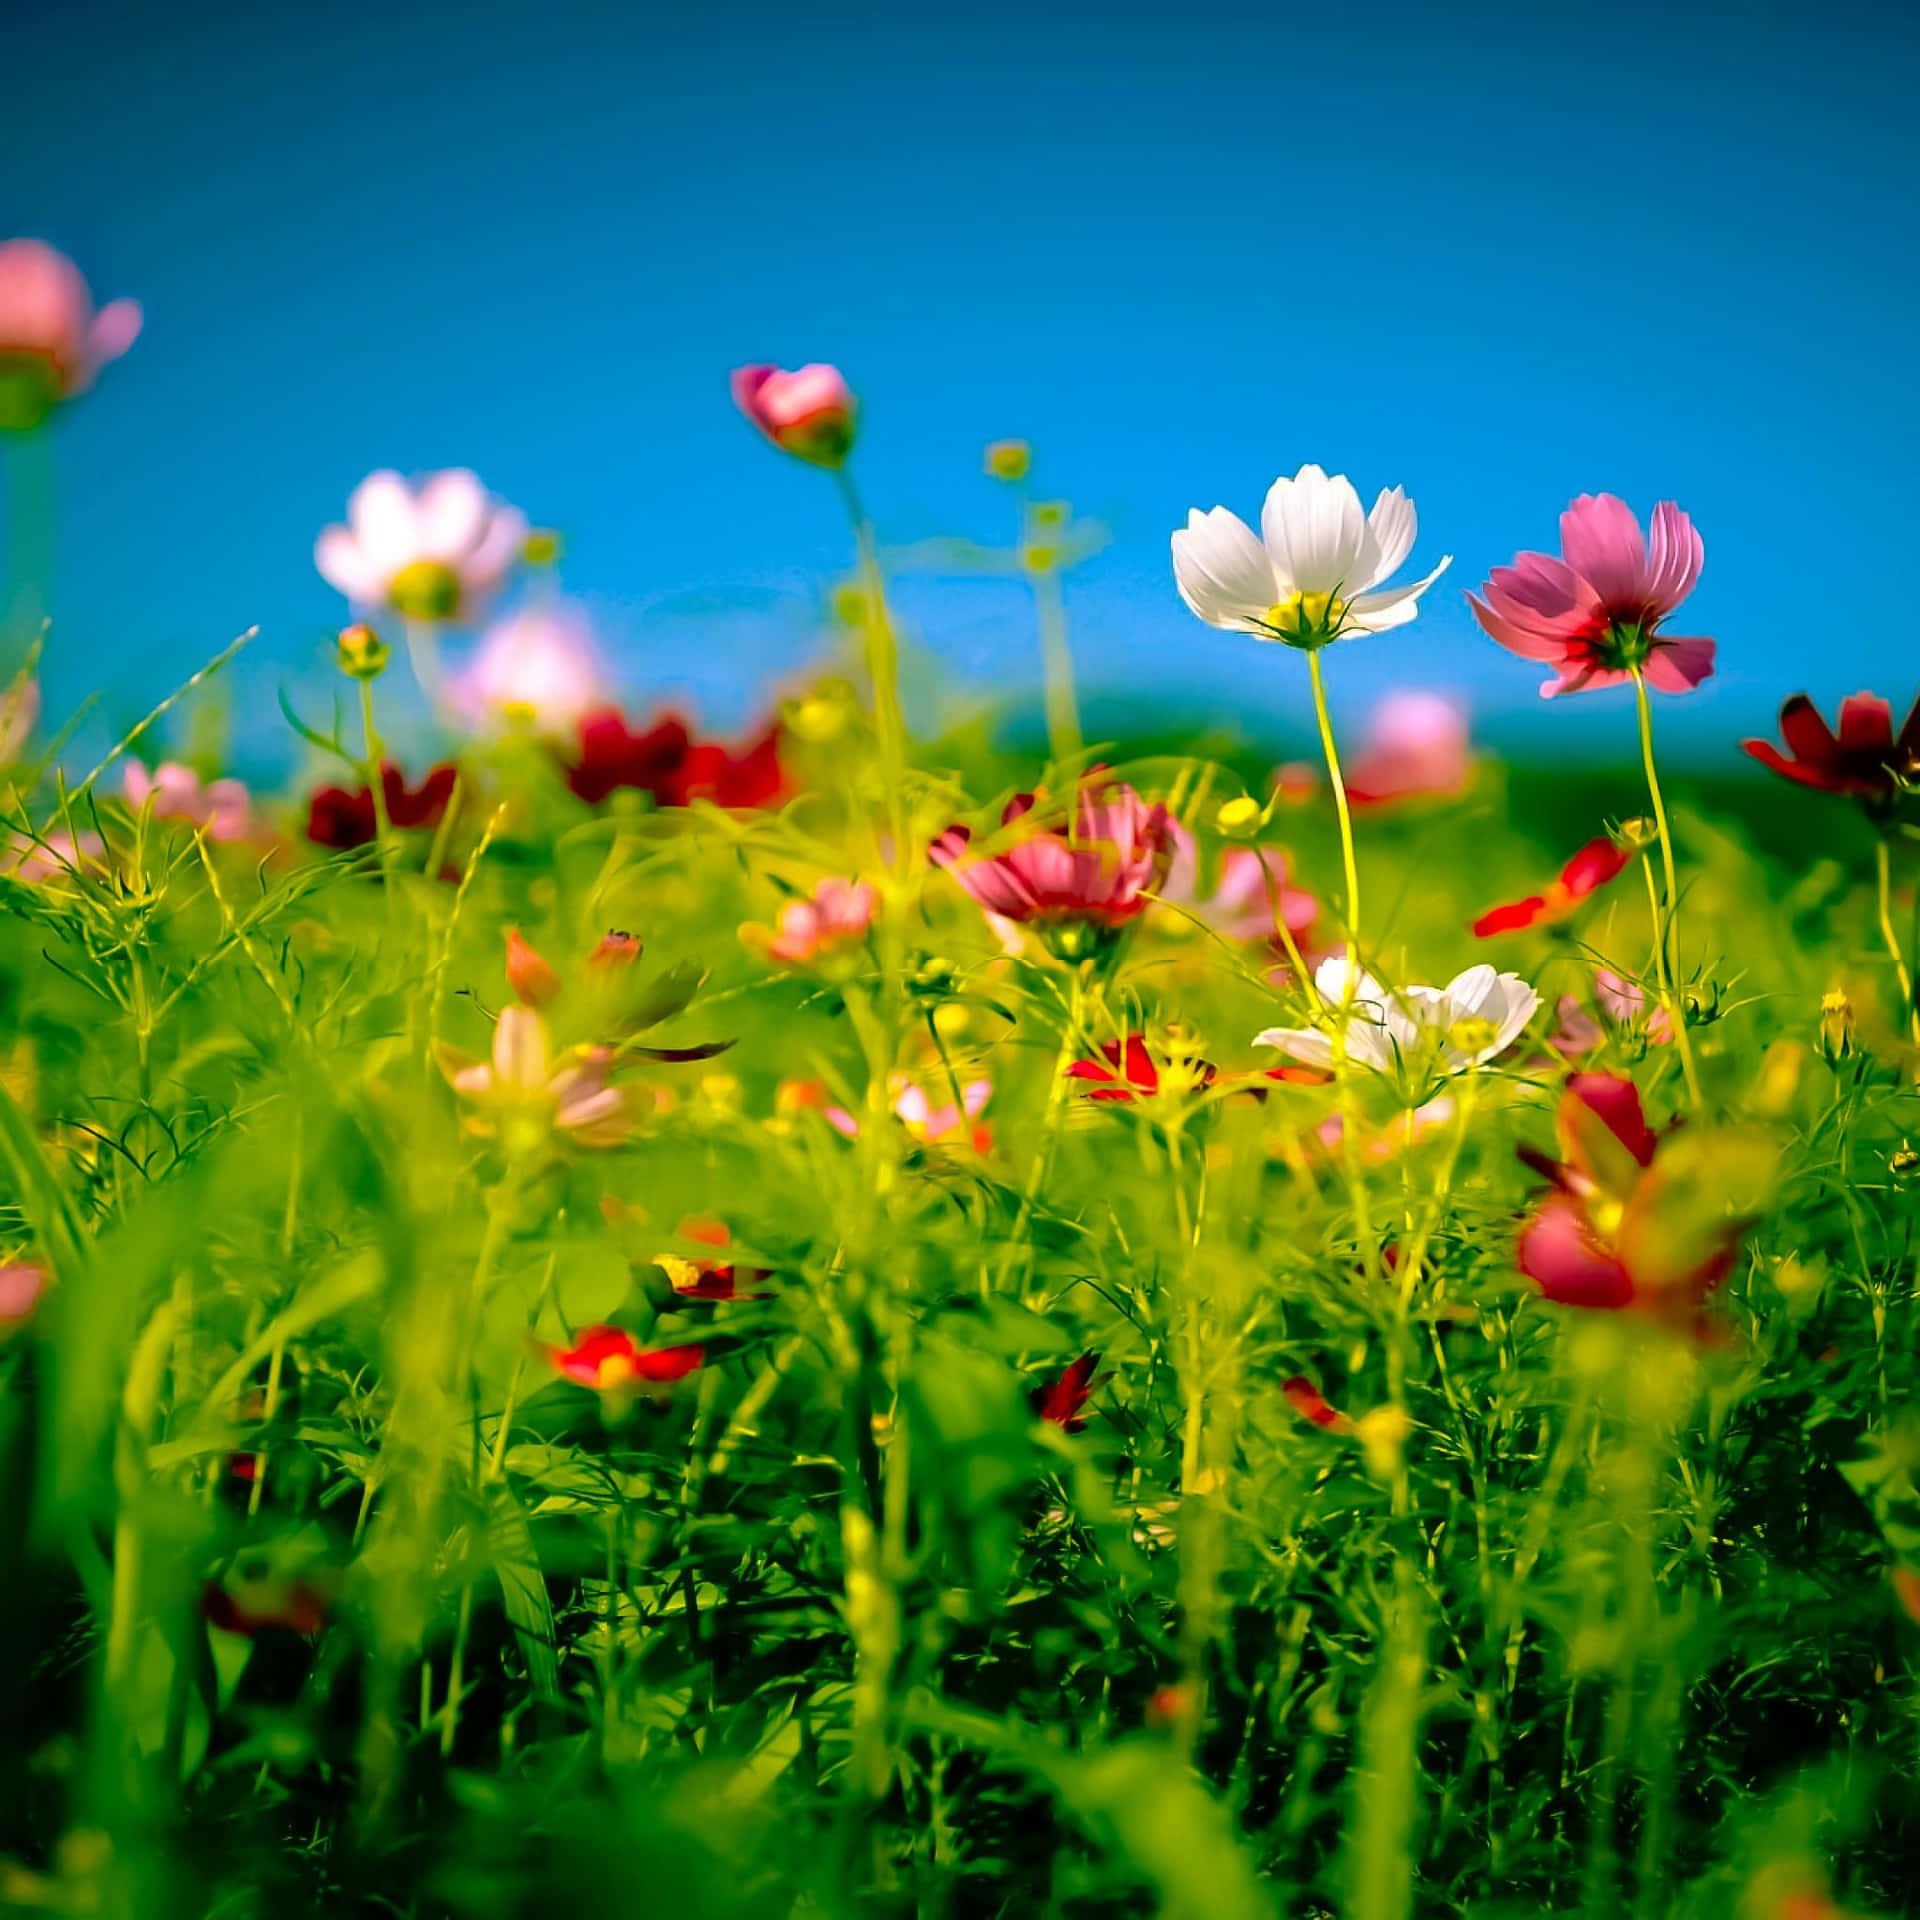 Enchanting Wildflowers in a Sunlit Meadow Wallpaper